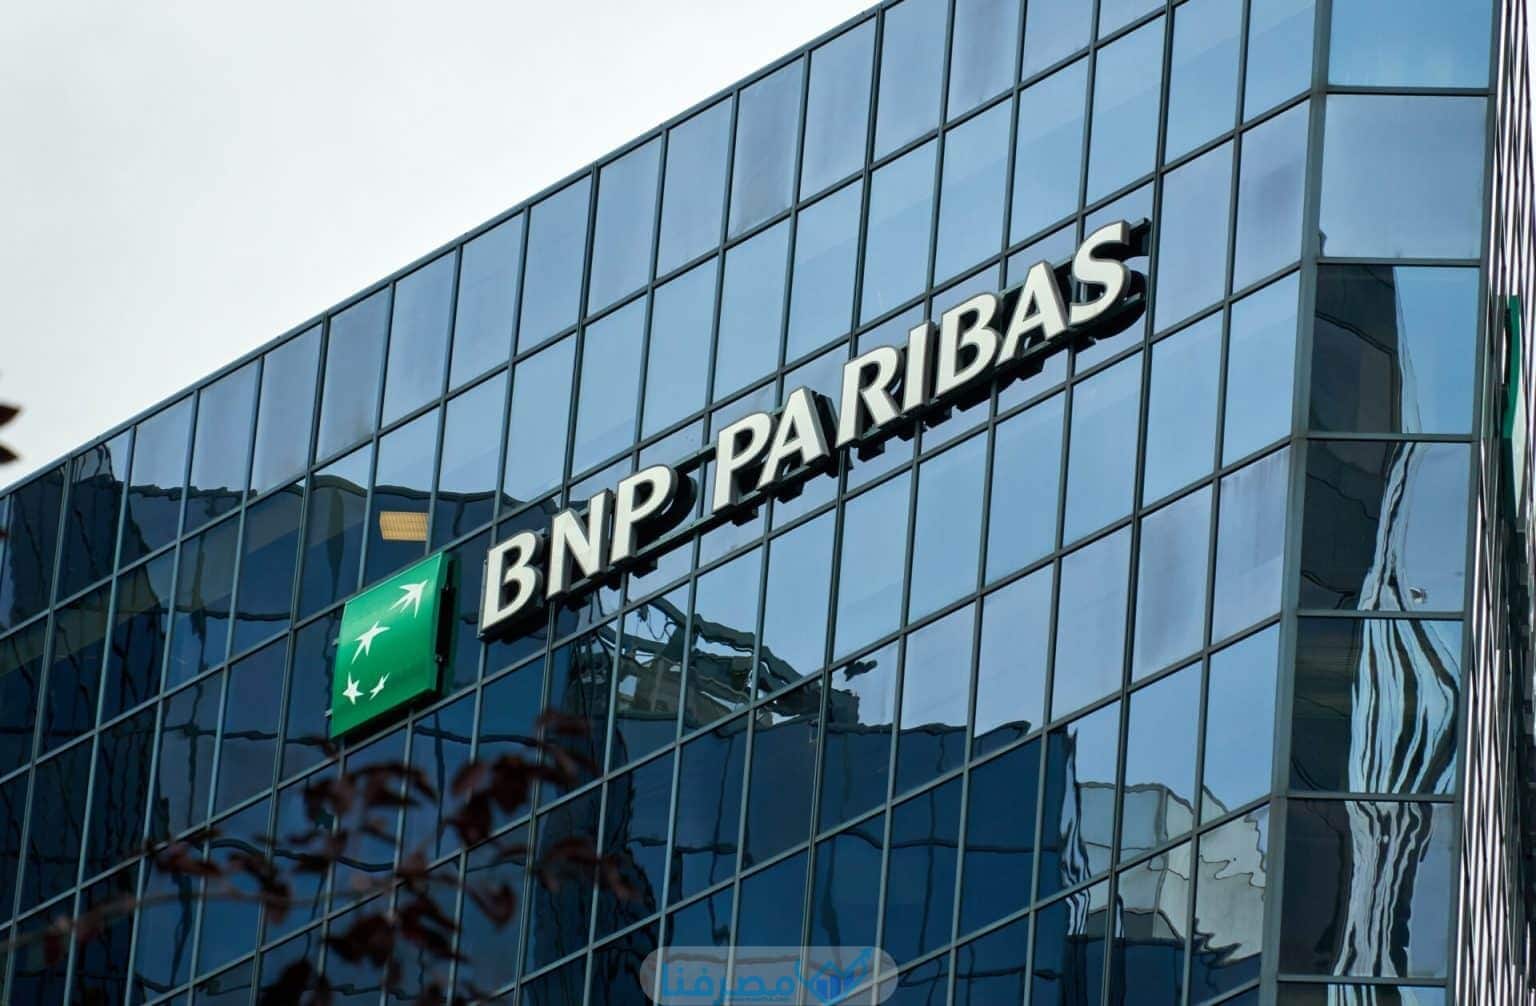 أبرز المعلومات عن مصرف باريس الوطني في السعودية